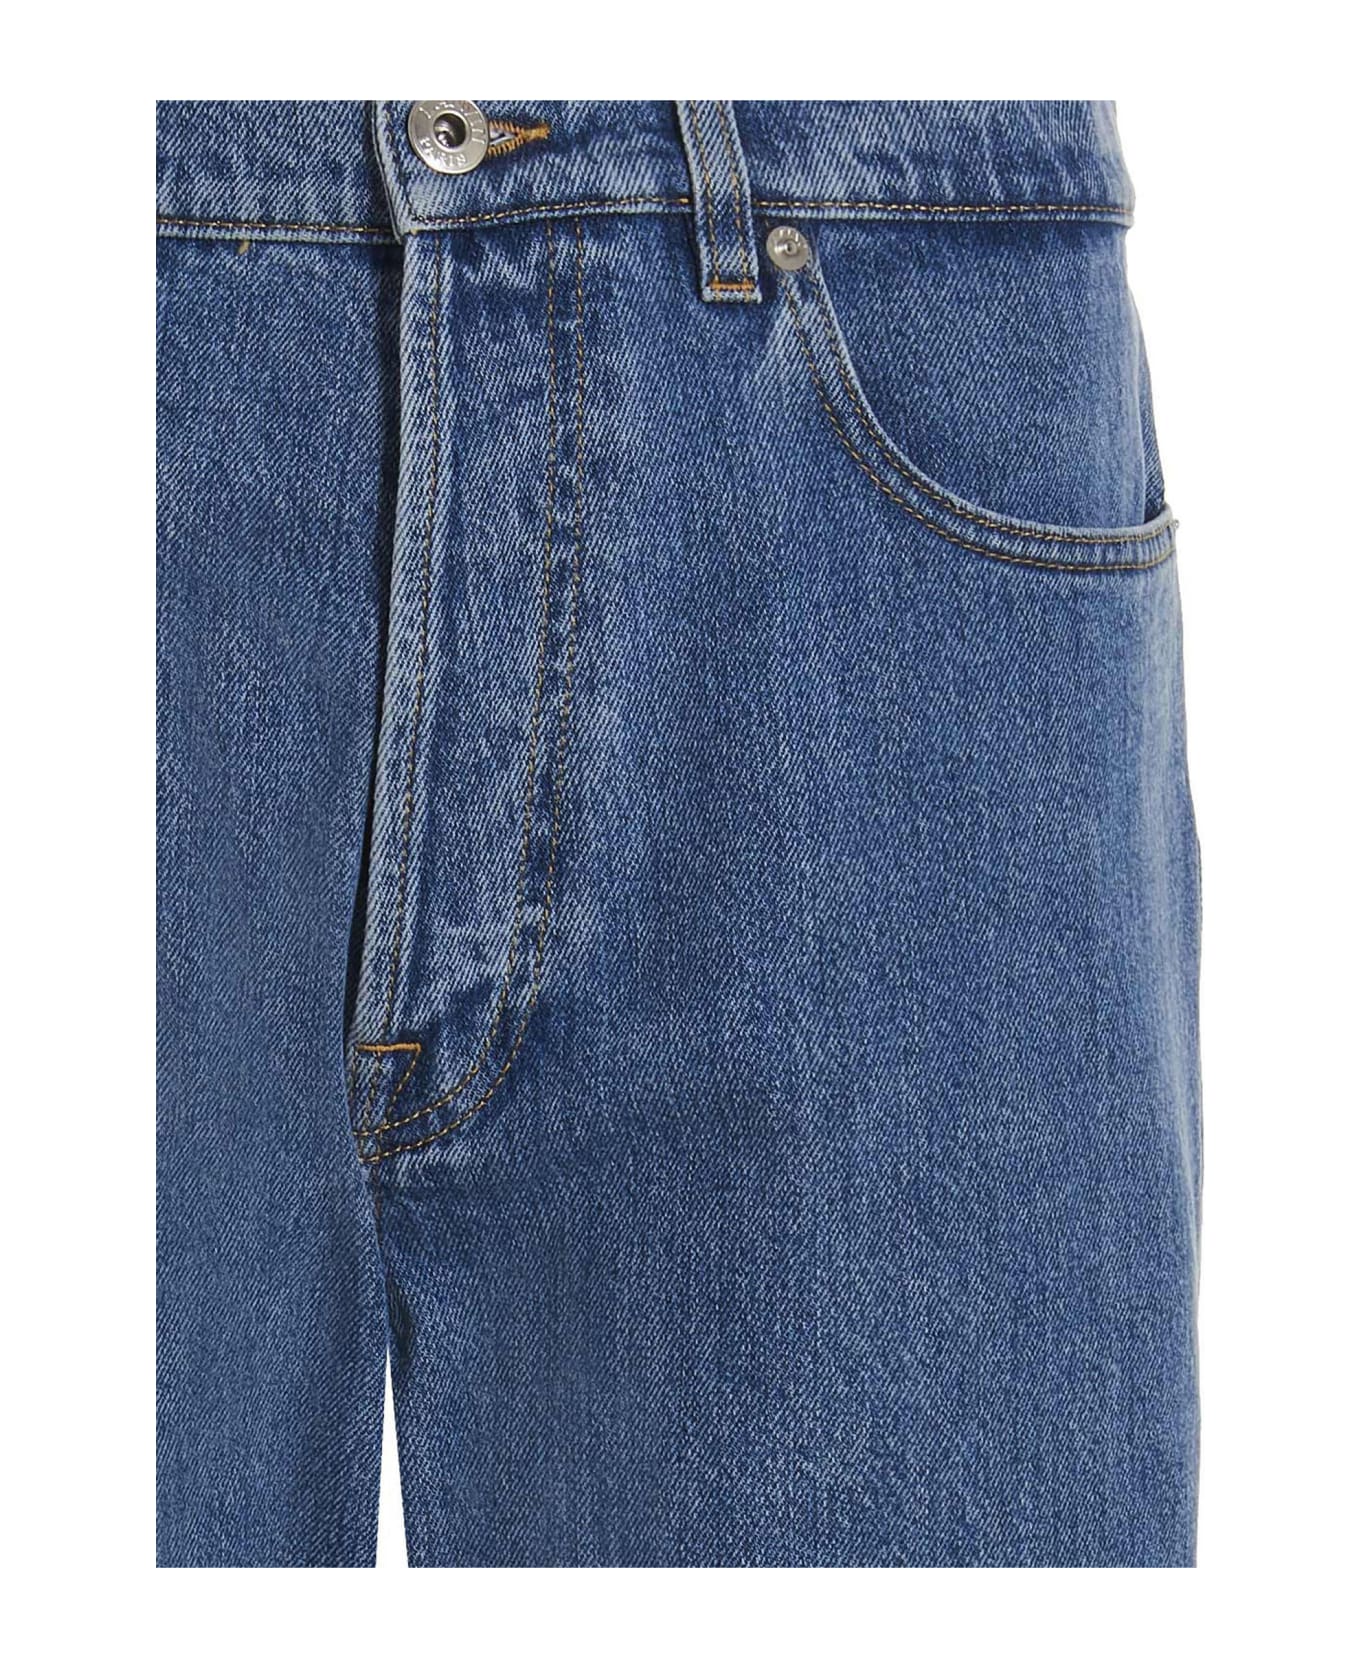 Lanvin Curb Fit Jeans - Blue